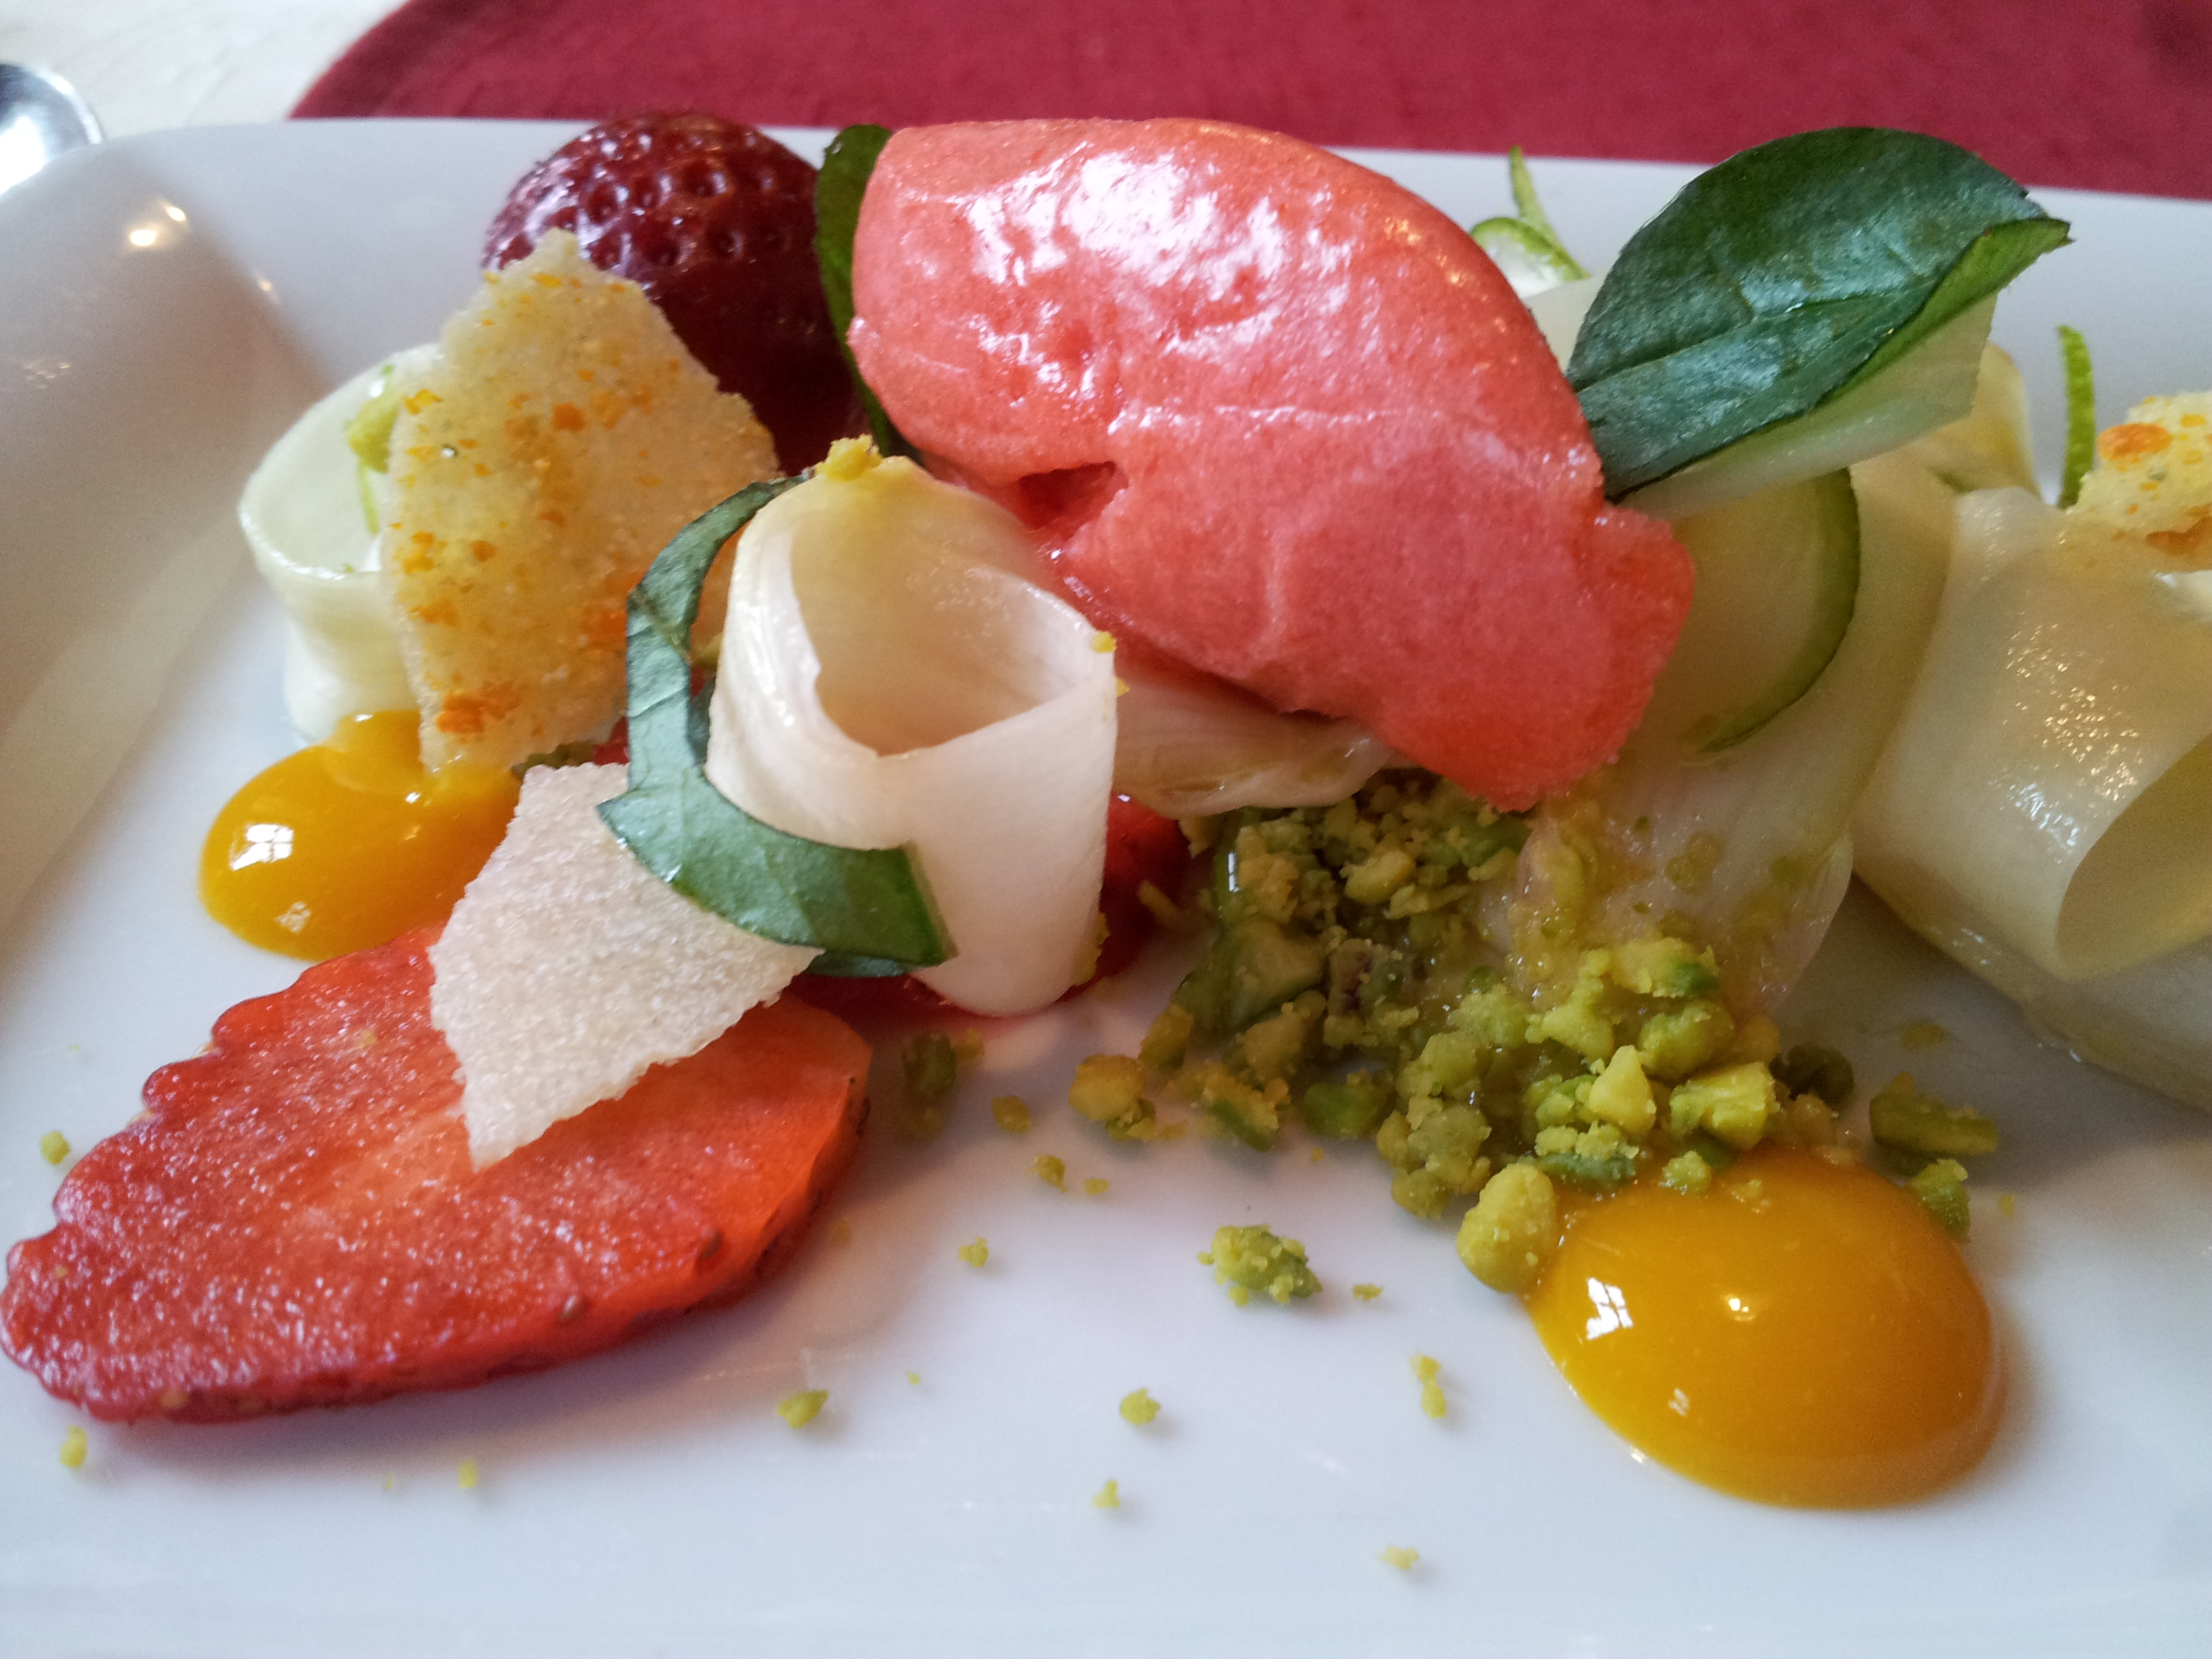 'Leichtes Spargelmenü' 04-2015 - Roher Spargel mit Erdbeeren und Erdbeersorbet - fein abgestimmt mit Ingwer und Limette (Vorschlag von mir)